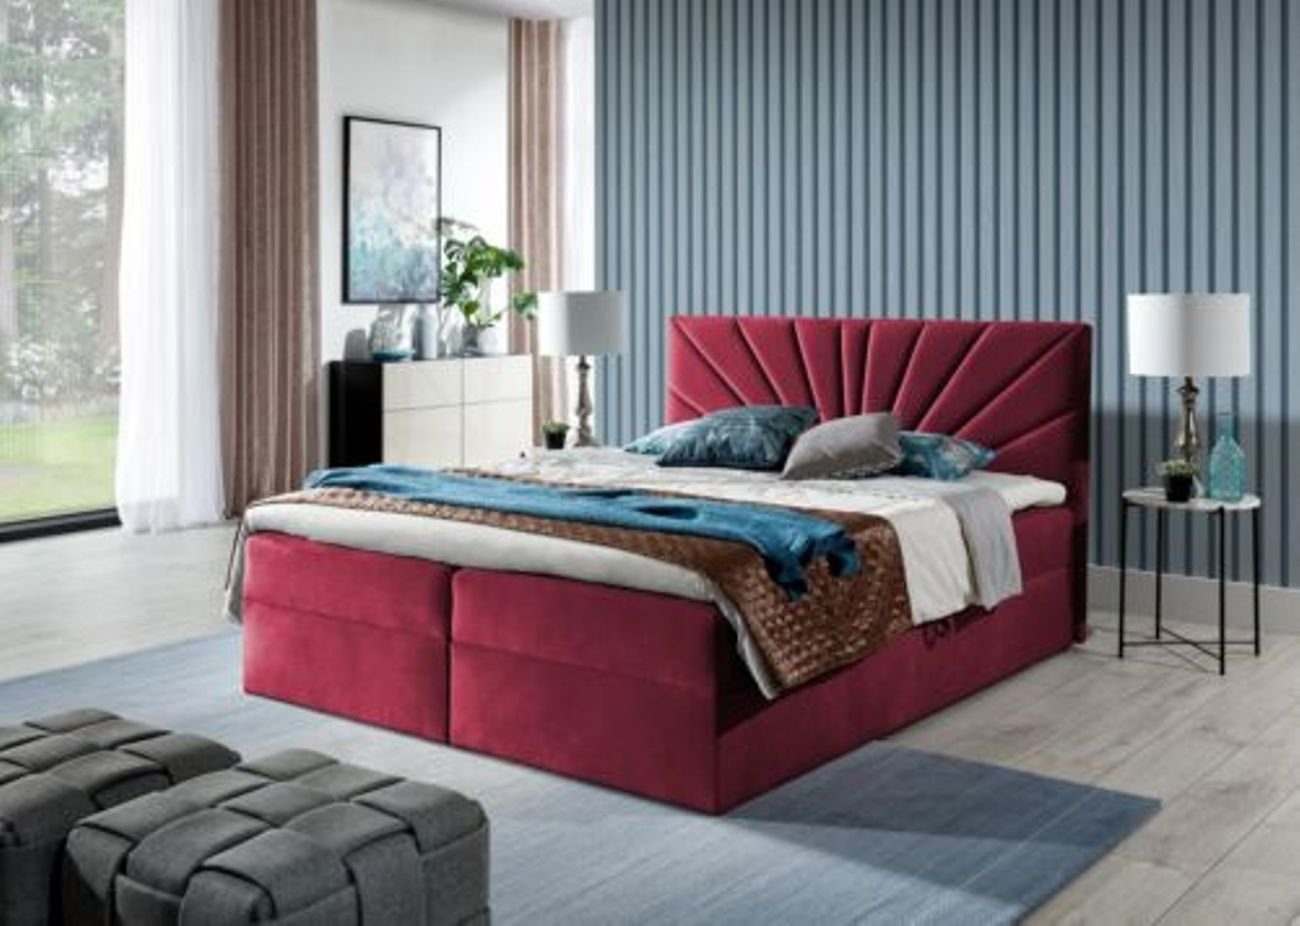 JVmoebel Bett, Boxspringbett Doppelbett Bett mit Bettkasten Ehebett Betten Rot